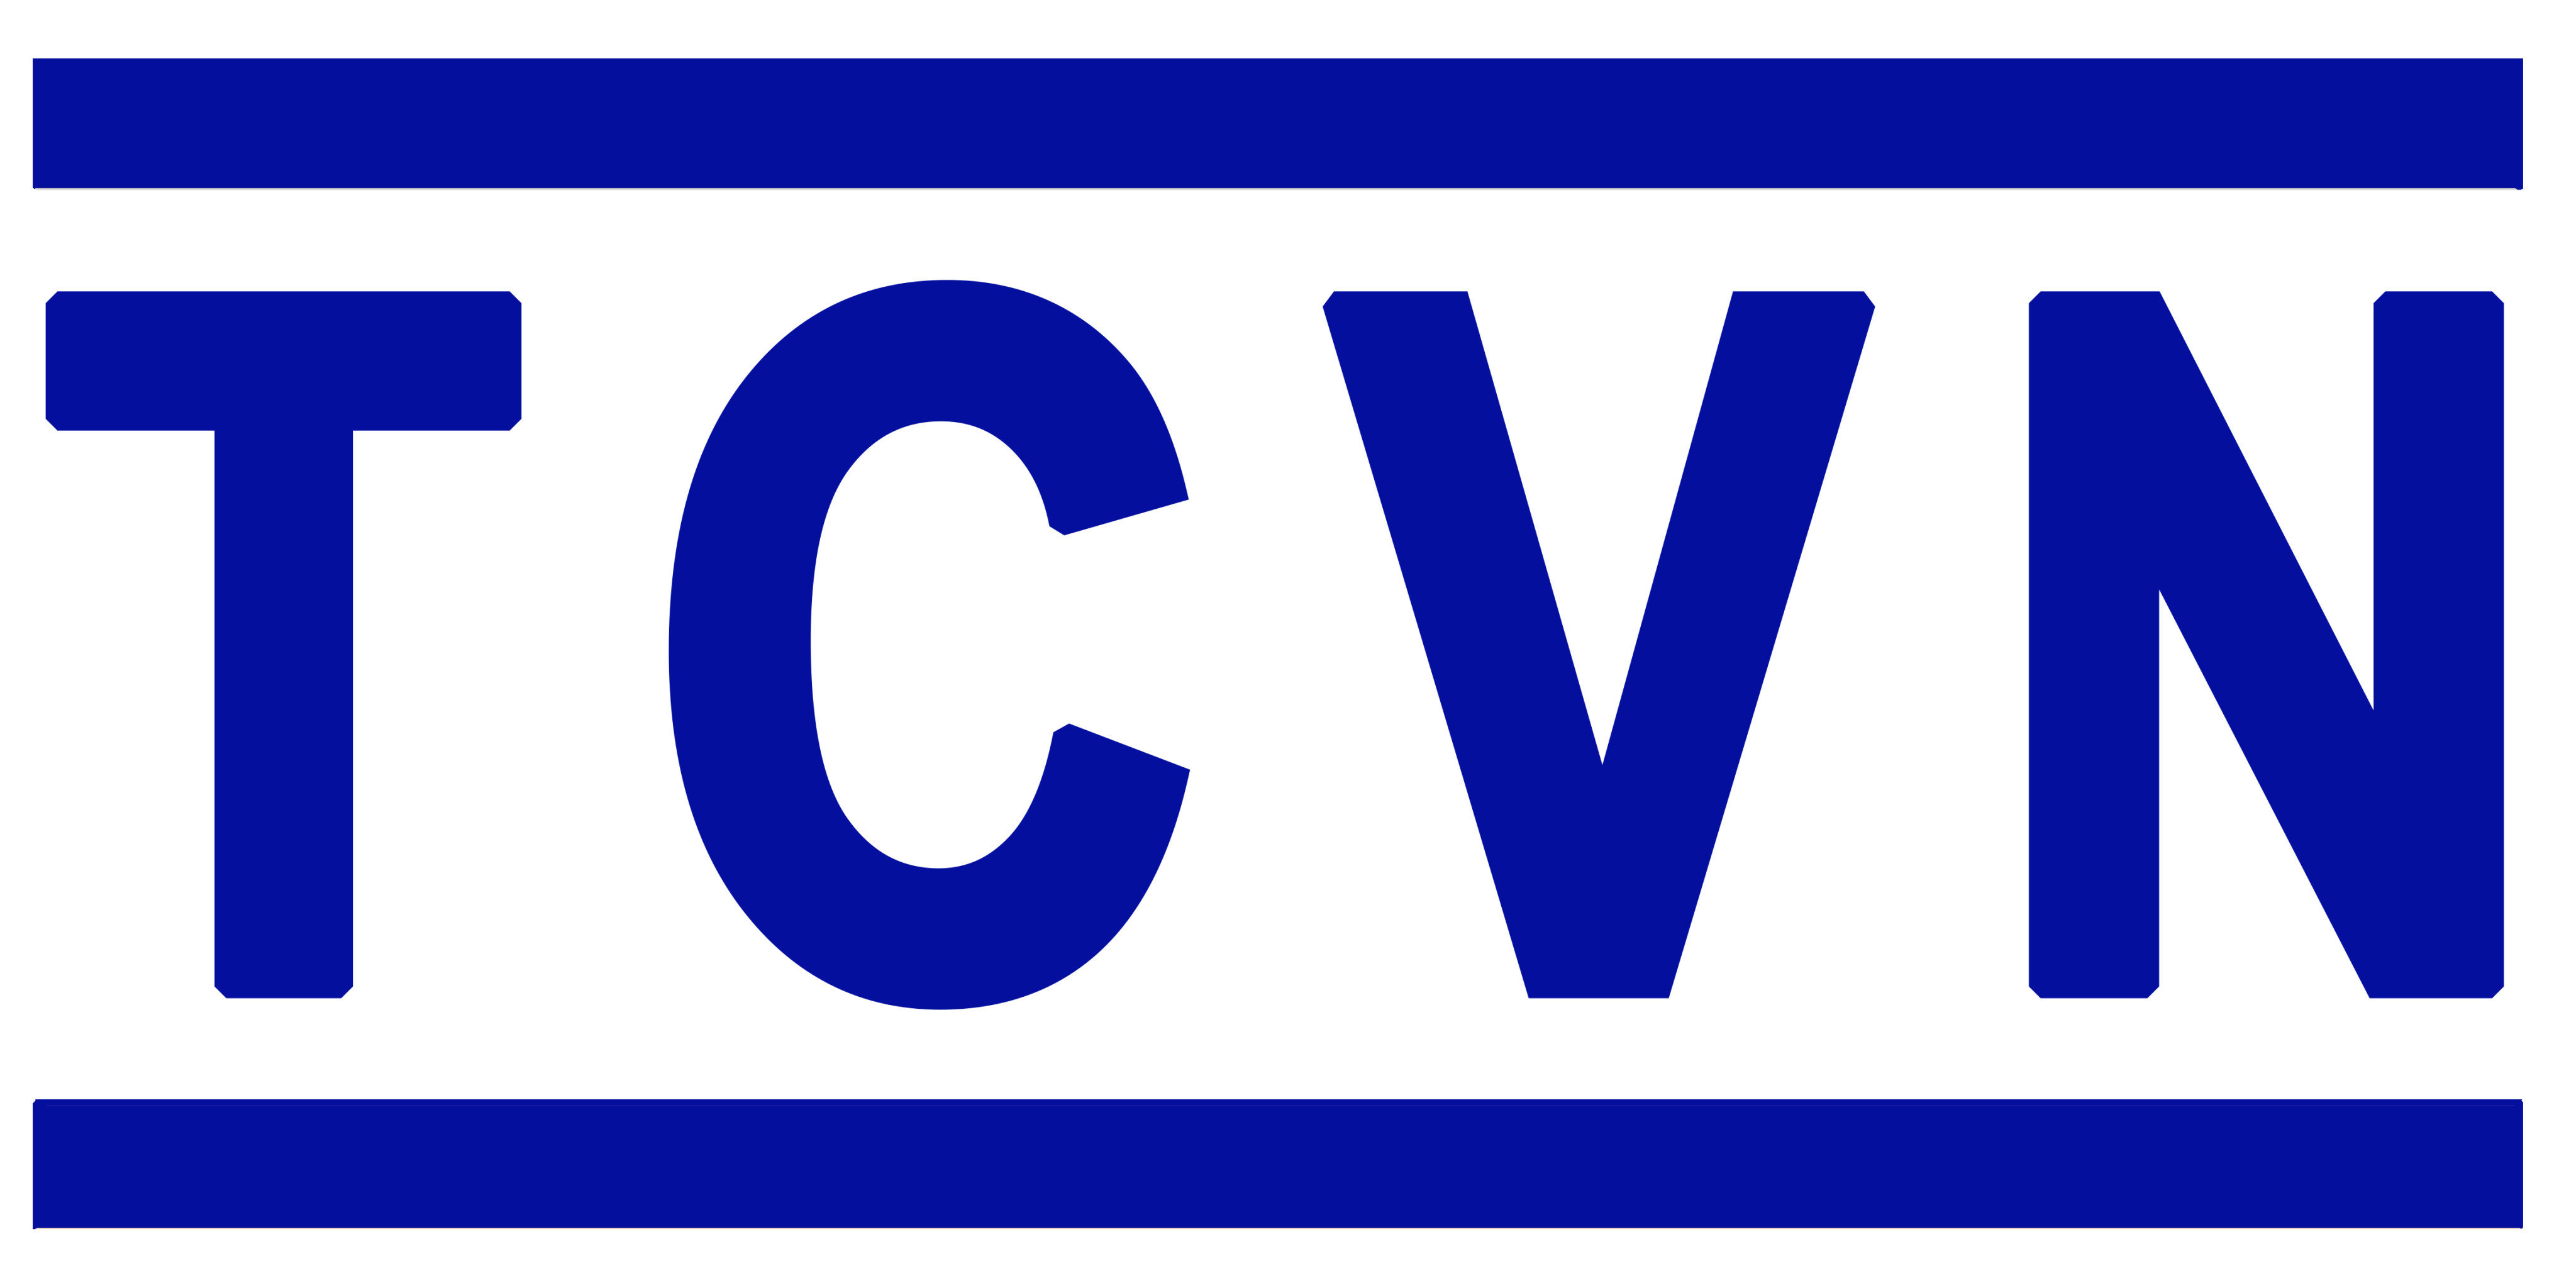 Danh mục tiêu chuẩn Quốc Gia (TCVN) công bố trong tháng 4 năm 2019